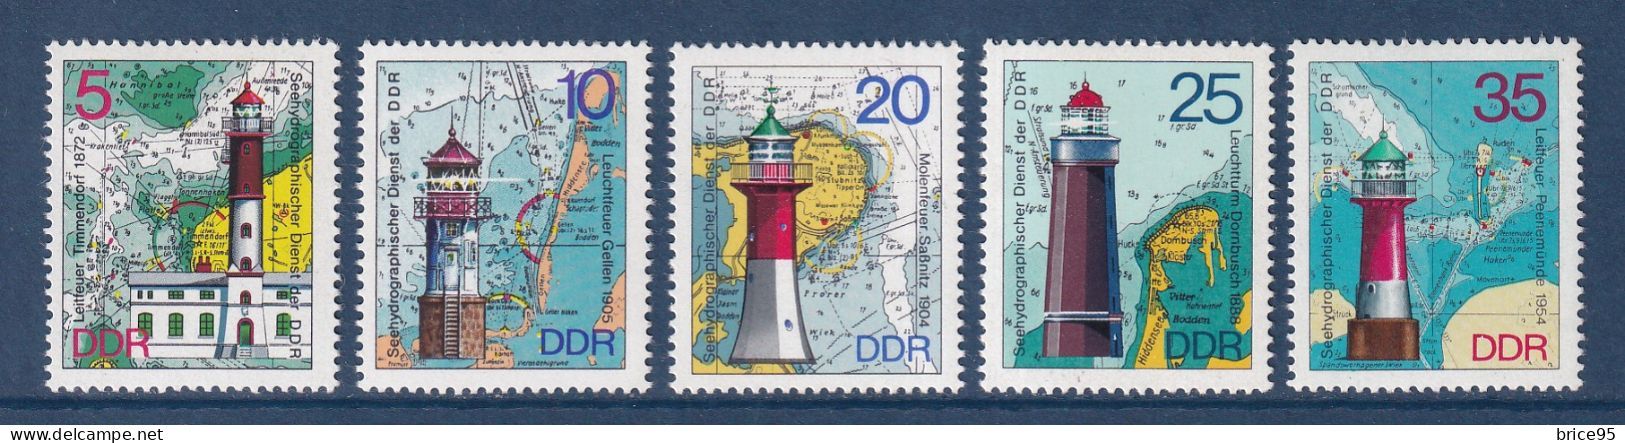 Allemagne Orientale - YT N° 1724 à 1728 ** - Neuf Sans Charnière - 1975 - Unused Stamps